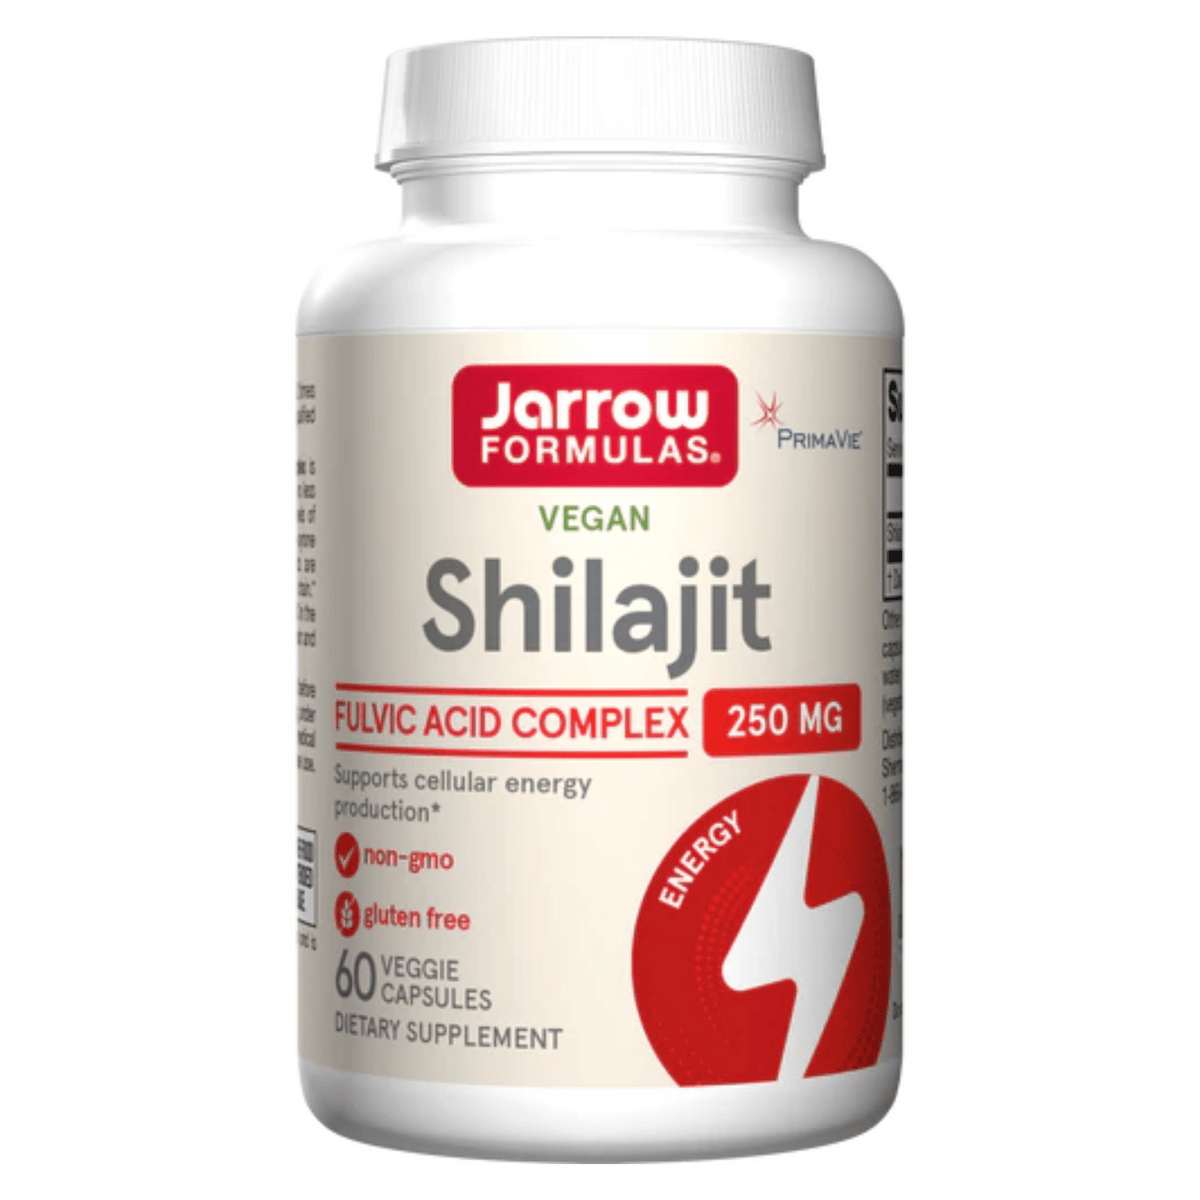 Primary Image of Shilajit 250 mg